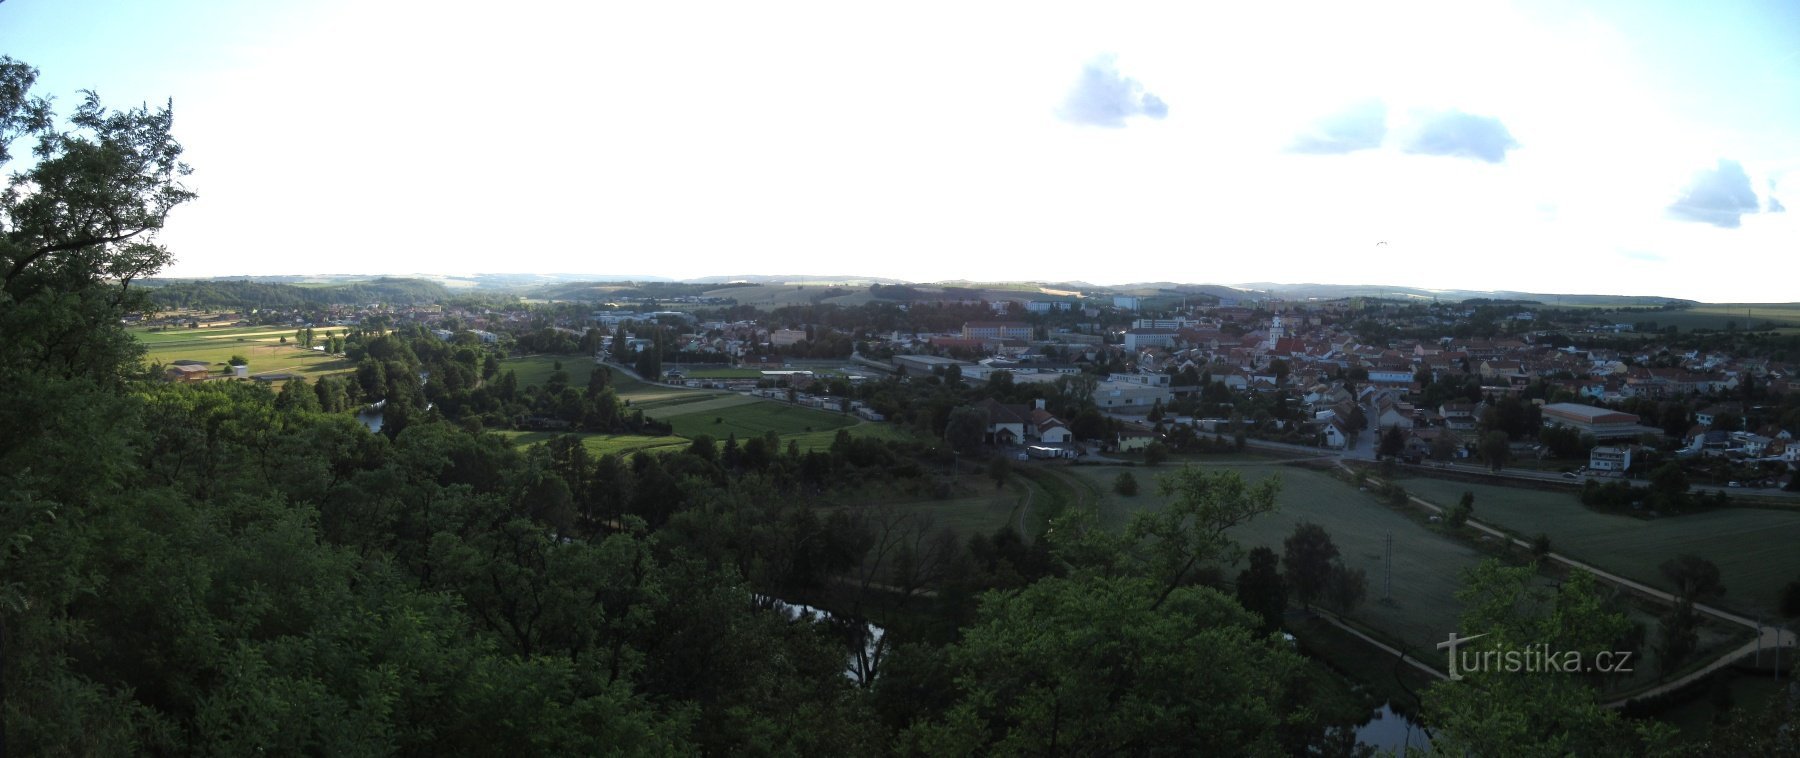 Ivančice - no Reno - fortaleza, parque e torre de observação de Alfons Mucha (Réna)